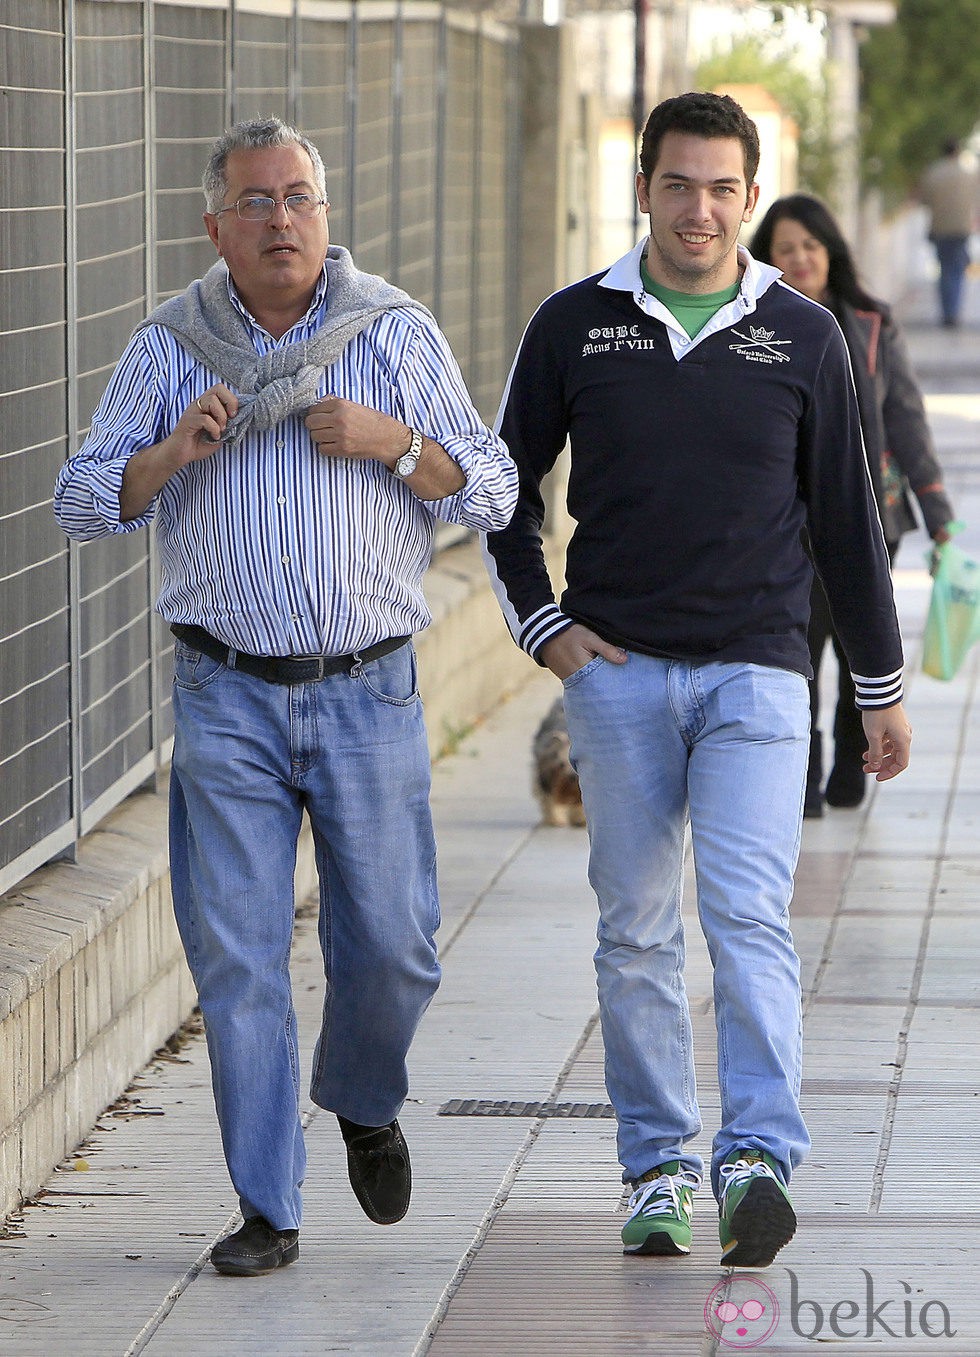 Alberto lsla con su tío en Sevilla